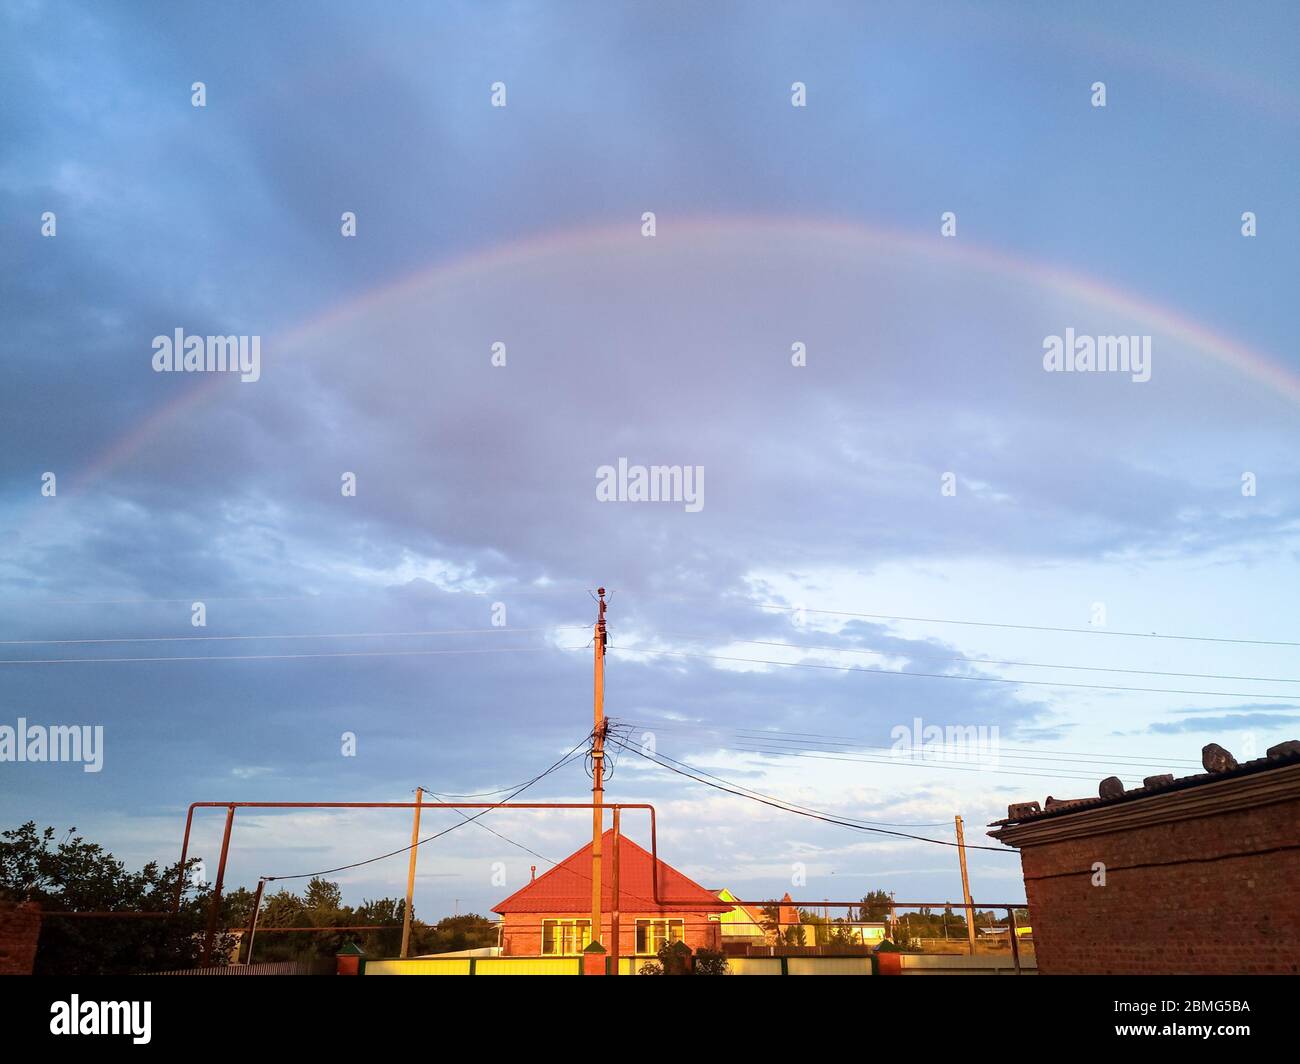 Rainbow over the village. Rainbow after rain. Stock Photo